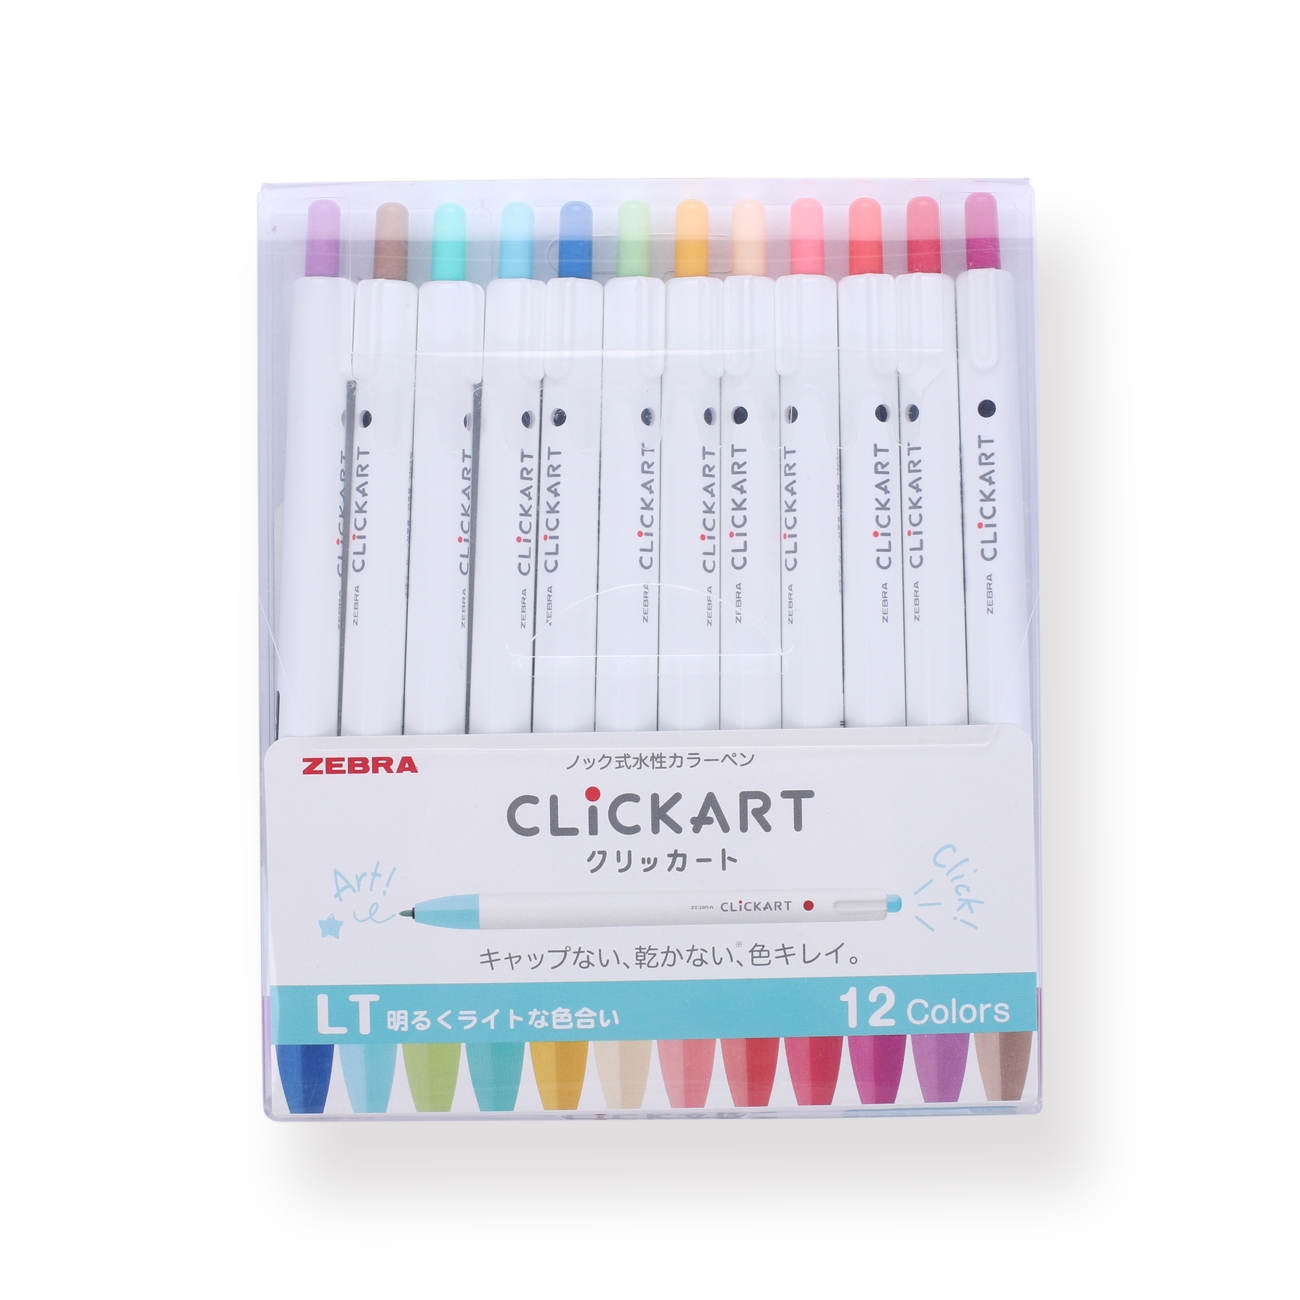 Zebra Clickart Water-Based Pen 12 Color Set (Light)